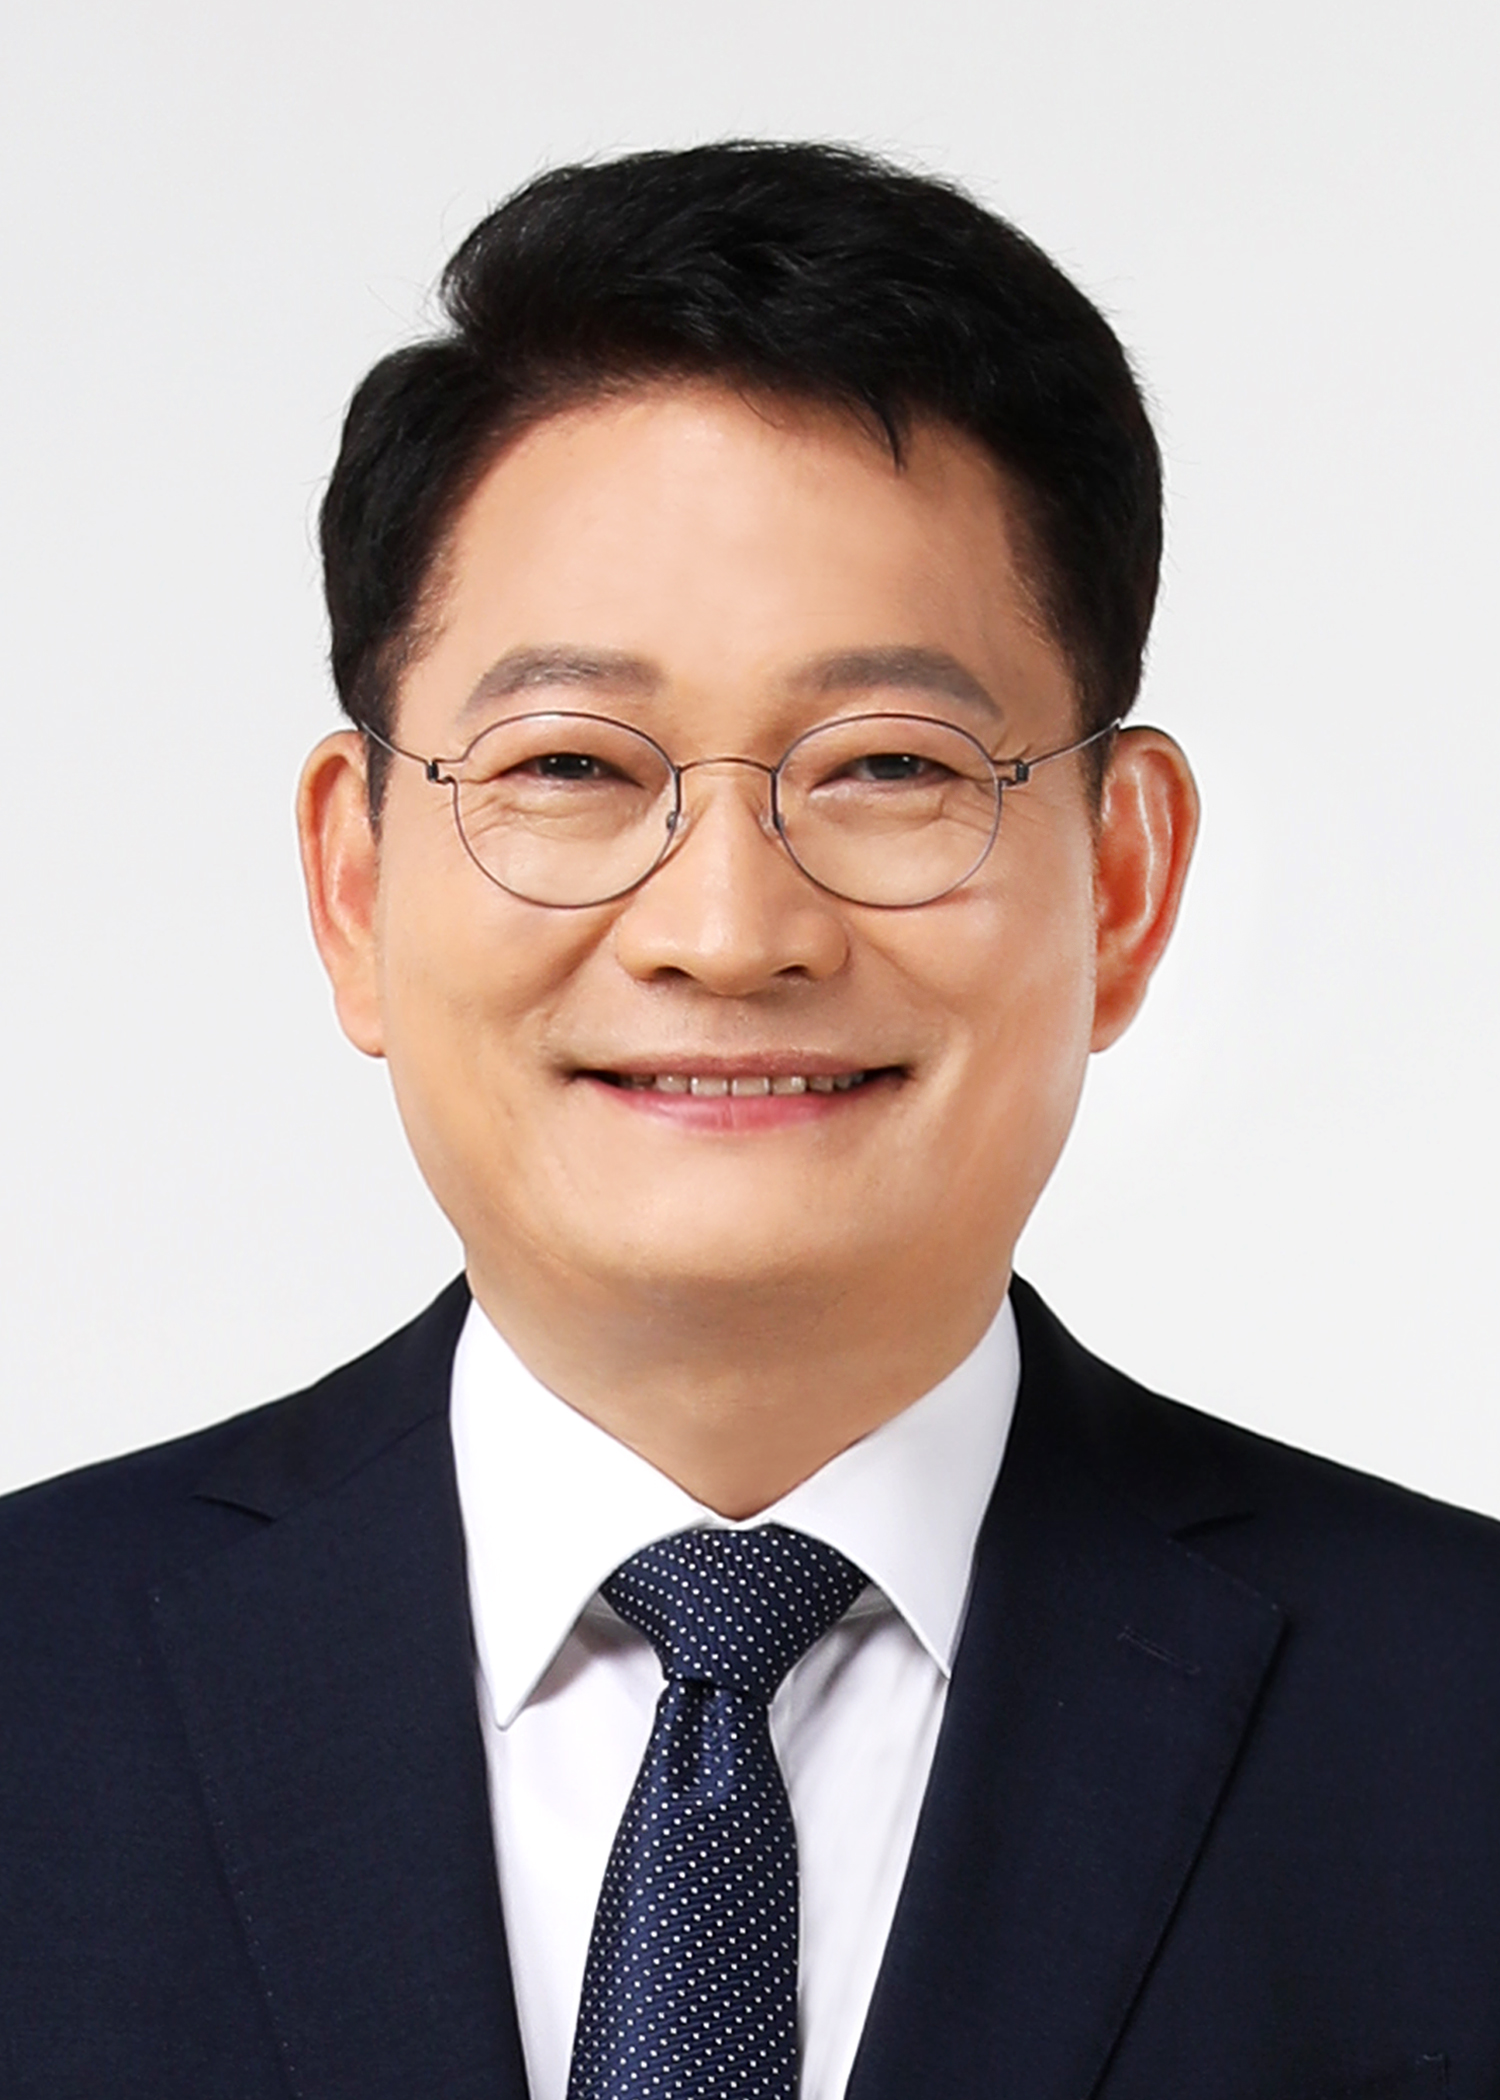 زعيم الحزب الديمقراطي الليبرالي سونج يونج جيل-ويكيبيديا